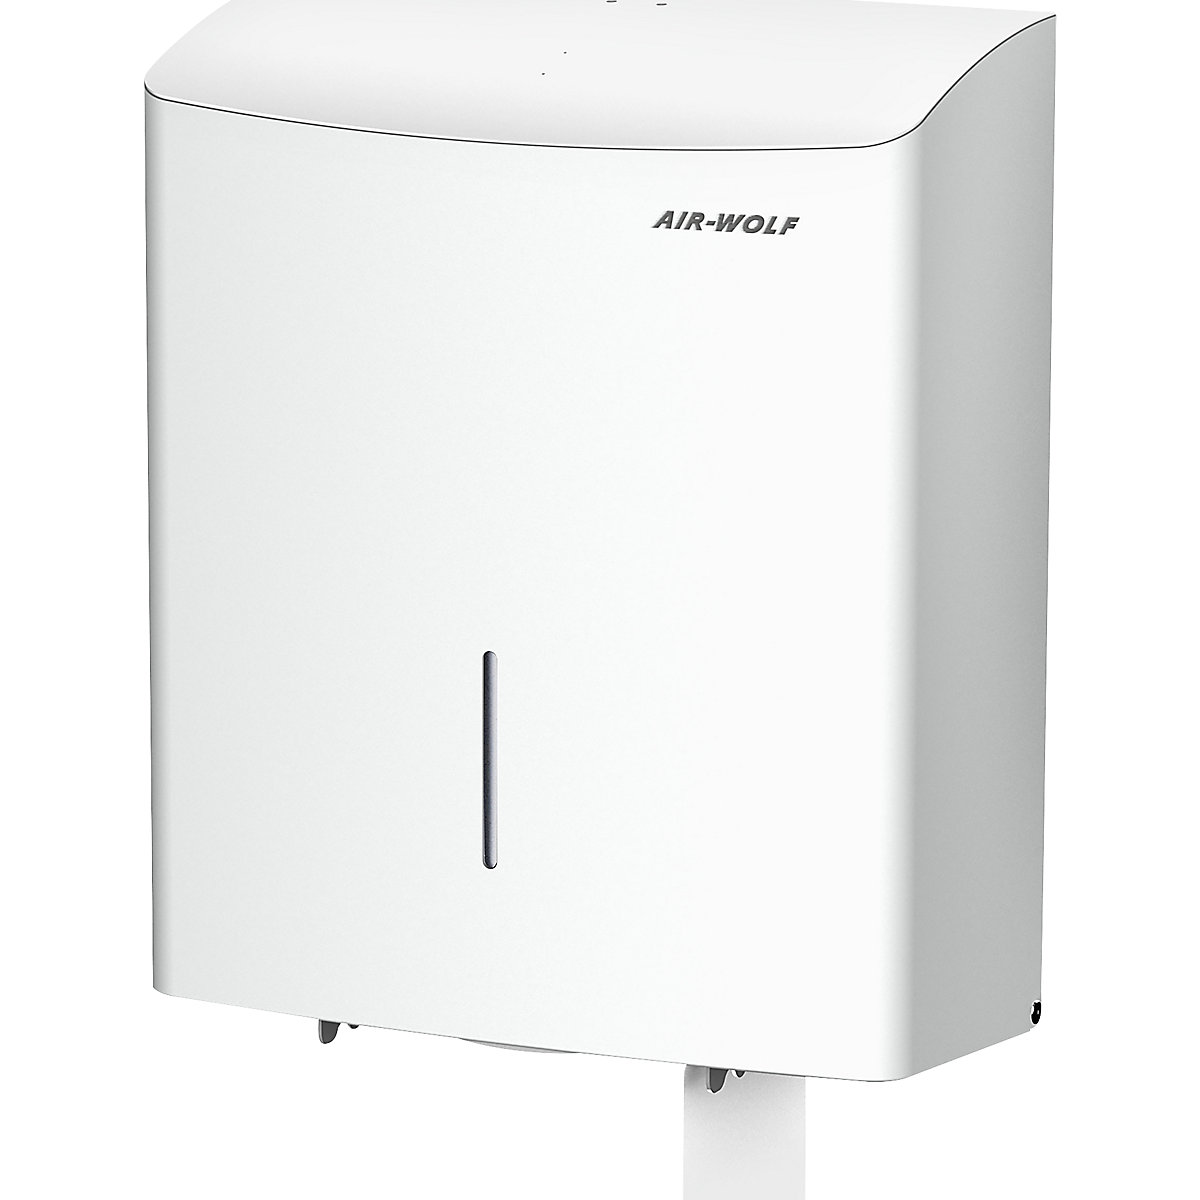 Zásobník toaletního papíru Duplex – AIR-WOLF, pro 1 velkou roli nebo 3 role pro domácnost, bílá ušlechtilá ocel